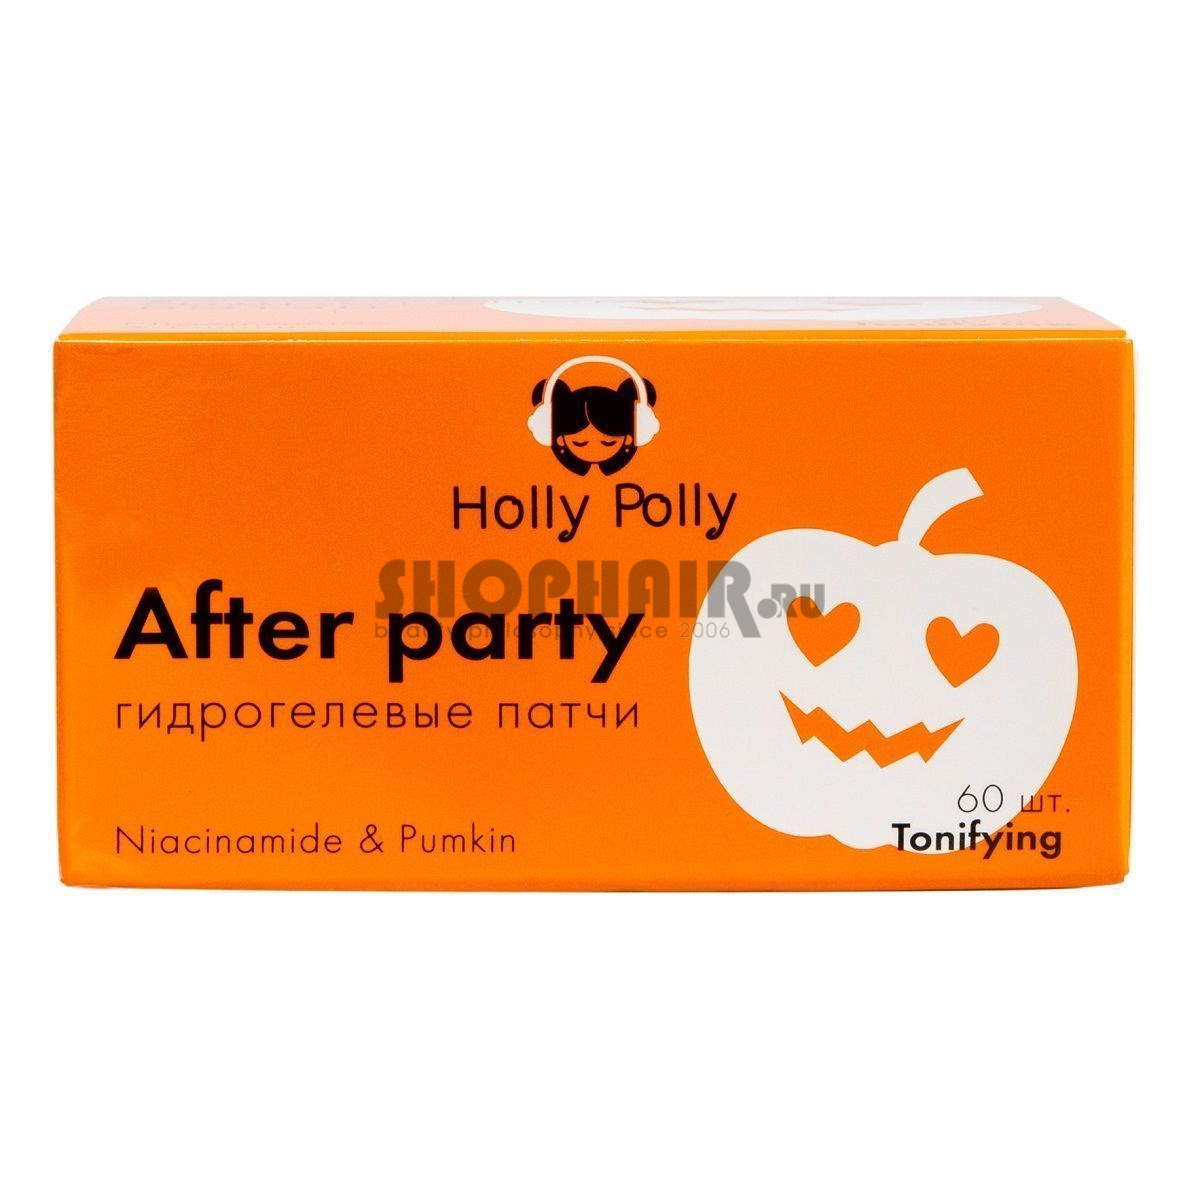 Holly Polly Music Collection After Party - Гидрогелевые патчи для глаз с Ниацинамидом и экстрактом Тыквы (Против темных кругов) 60 шт Holly Polly (Россия) купить по цене 299 руб.